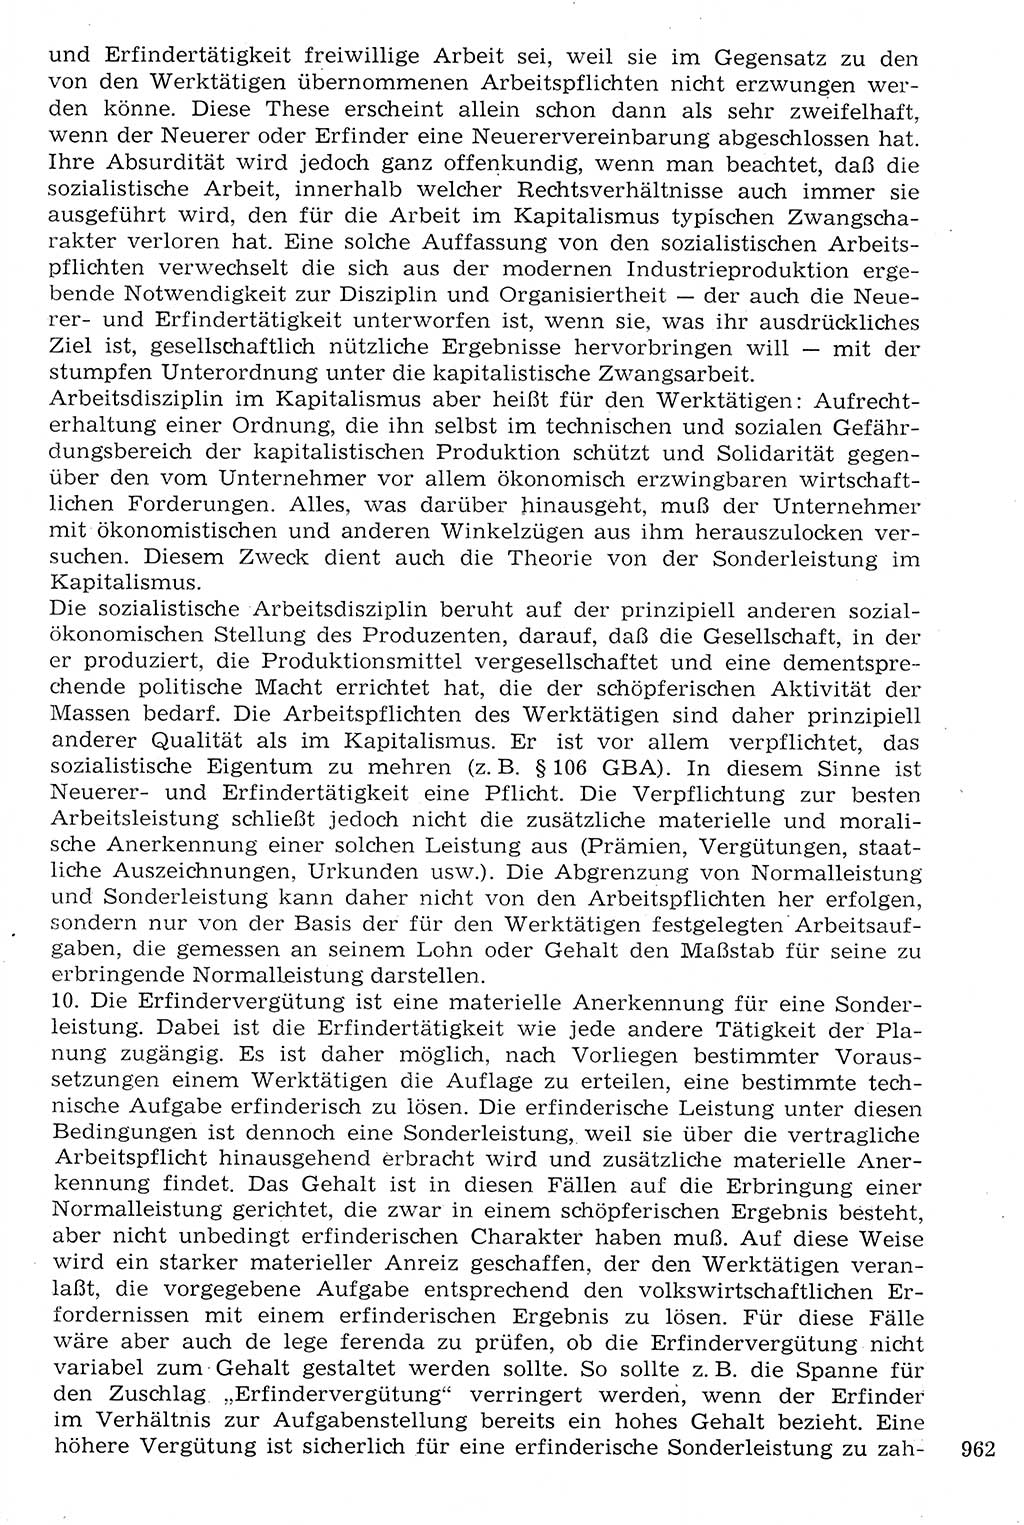 Staat und Recht (StuR), 17. Jahrgang [Deutsche Demokratische Republik (DDR)] 1968, Seite 962 (StuR DDR 1968, S. 962)